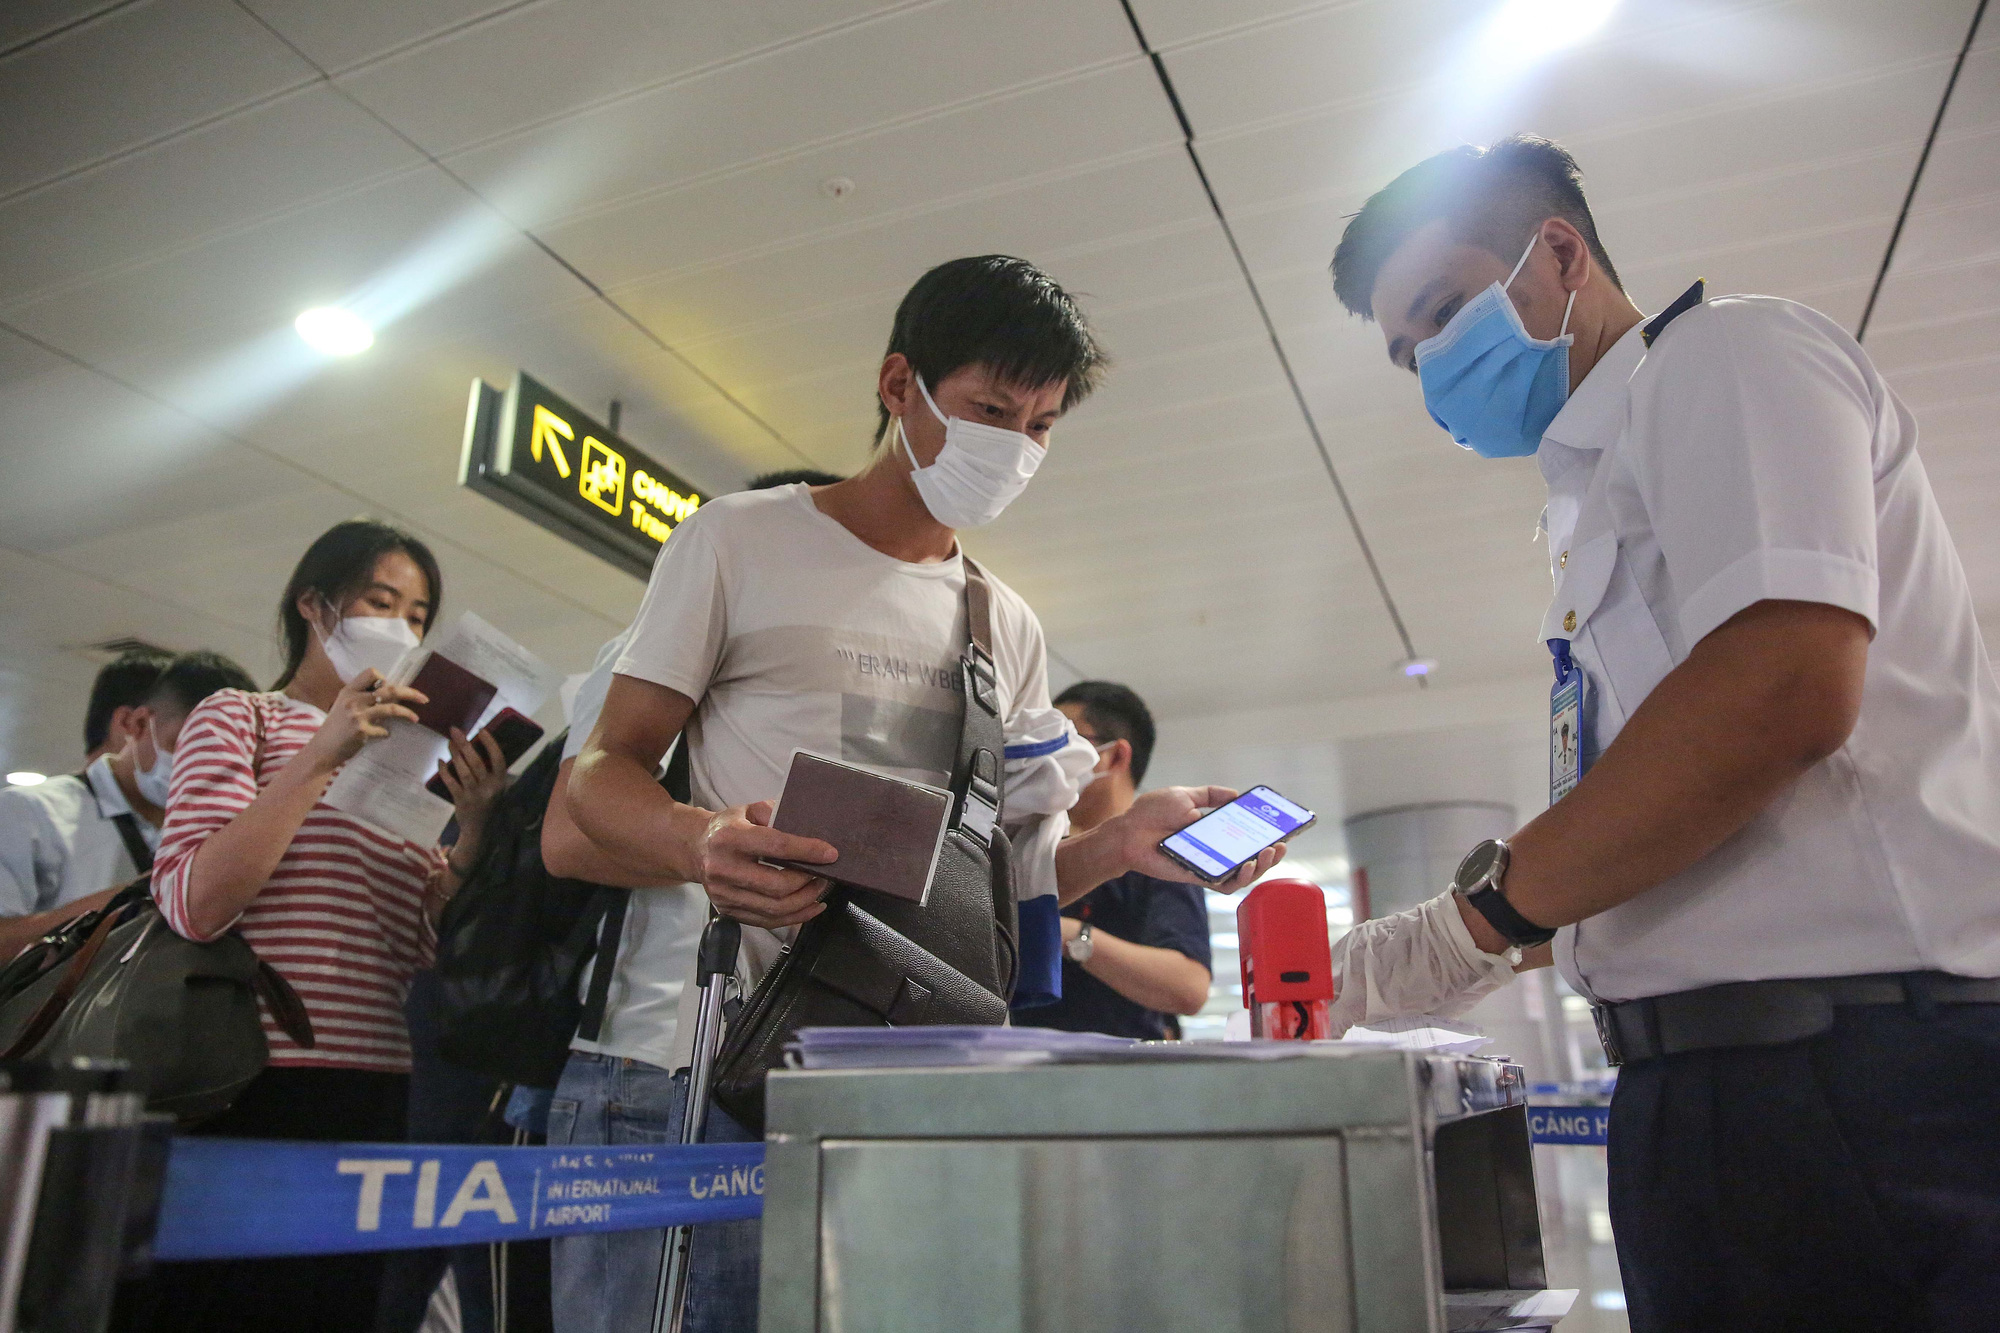 VIDEO: Cận cảnh quy trình khai báo y tế bắt buộc ở Sân bay Tân Sơn Nhất - Ảnh 10.